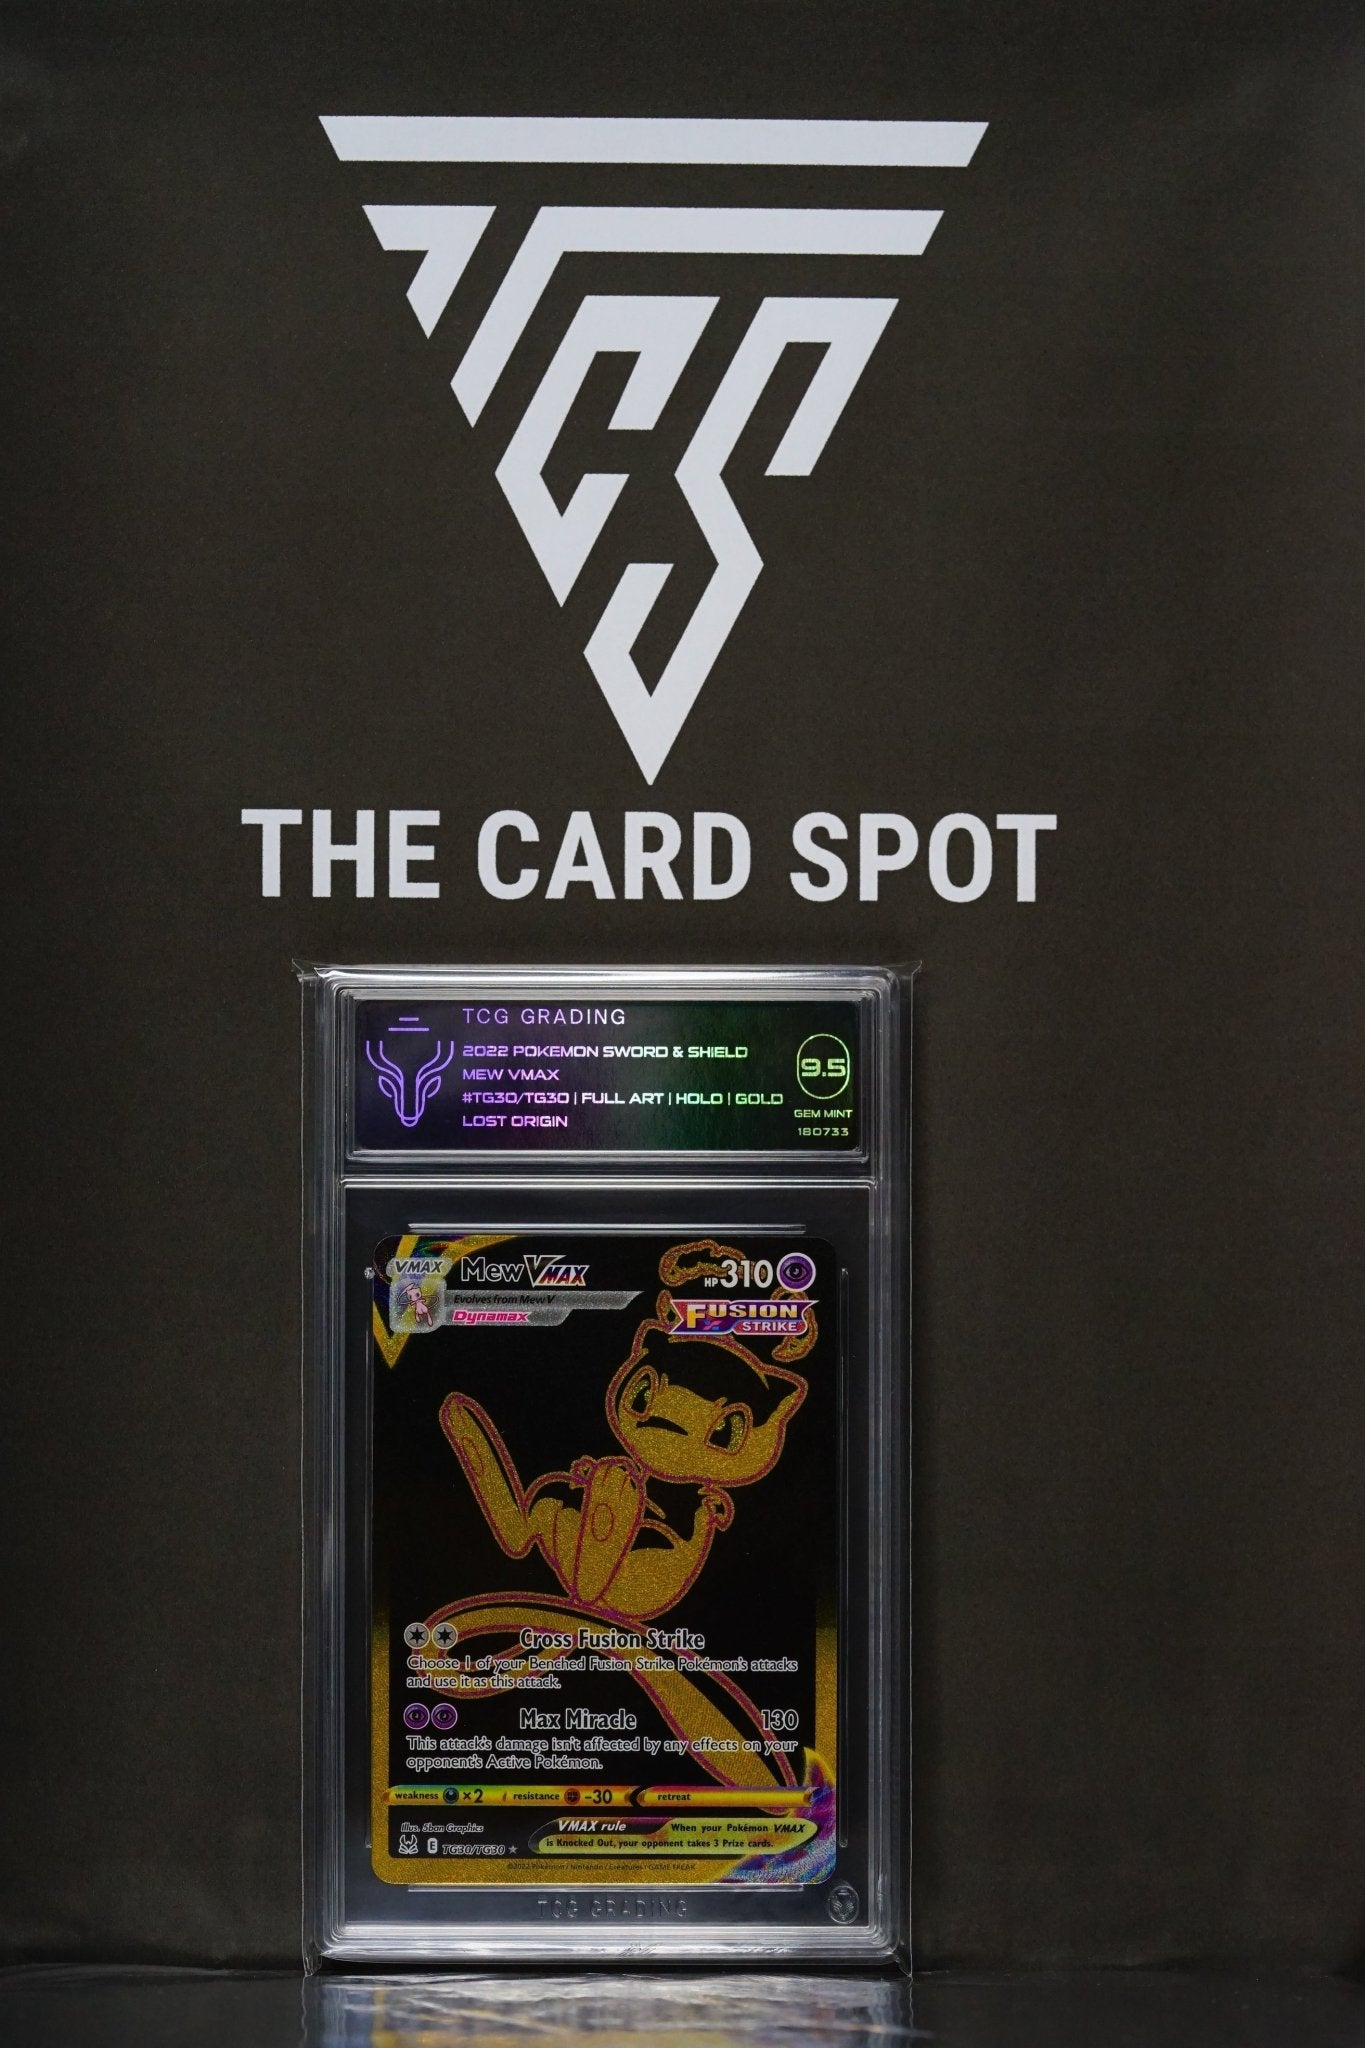 Pokemon Card: Mew Vmax TG30/TG30 - GEM MINT 9.5 - THE CARD SPOT PTY LTD.GradedPokémon